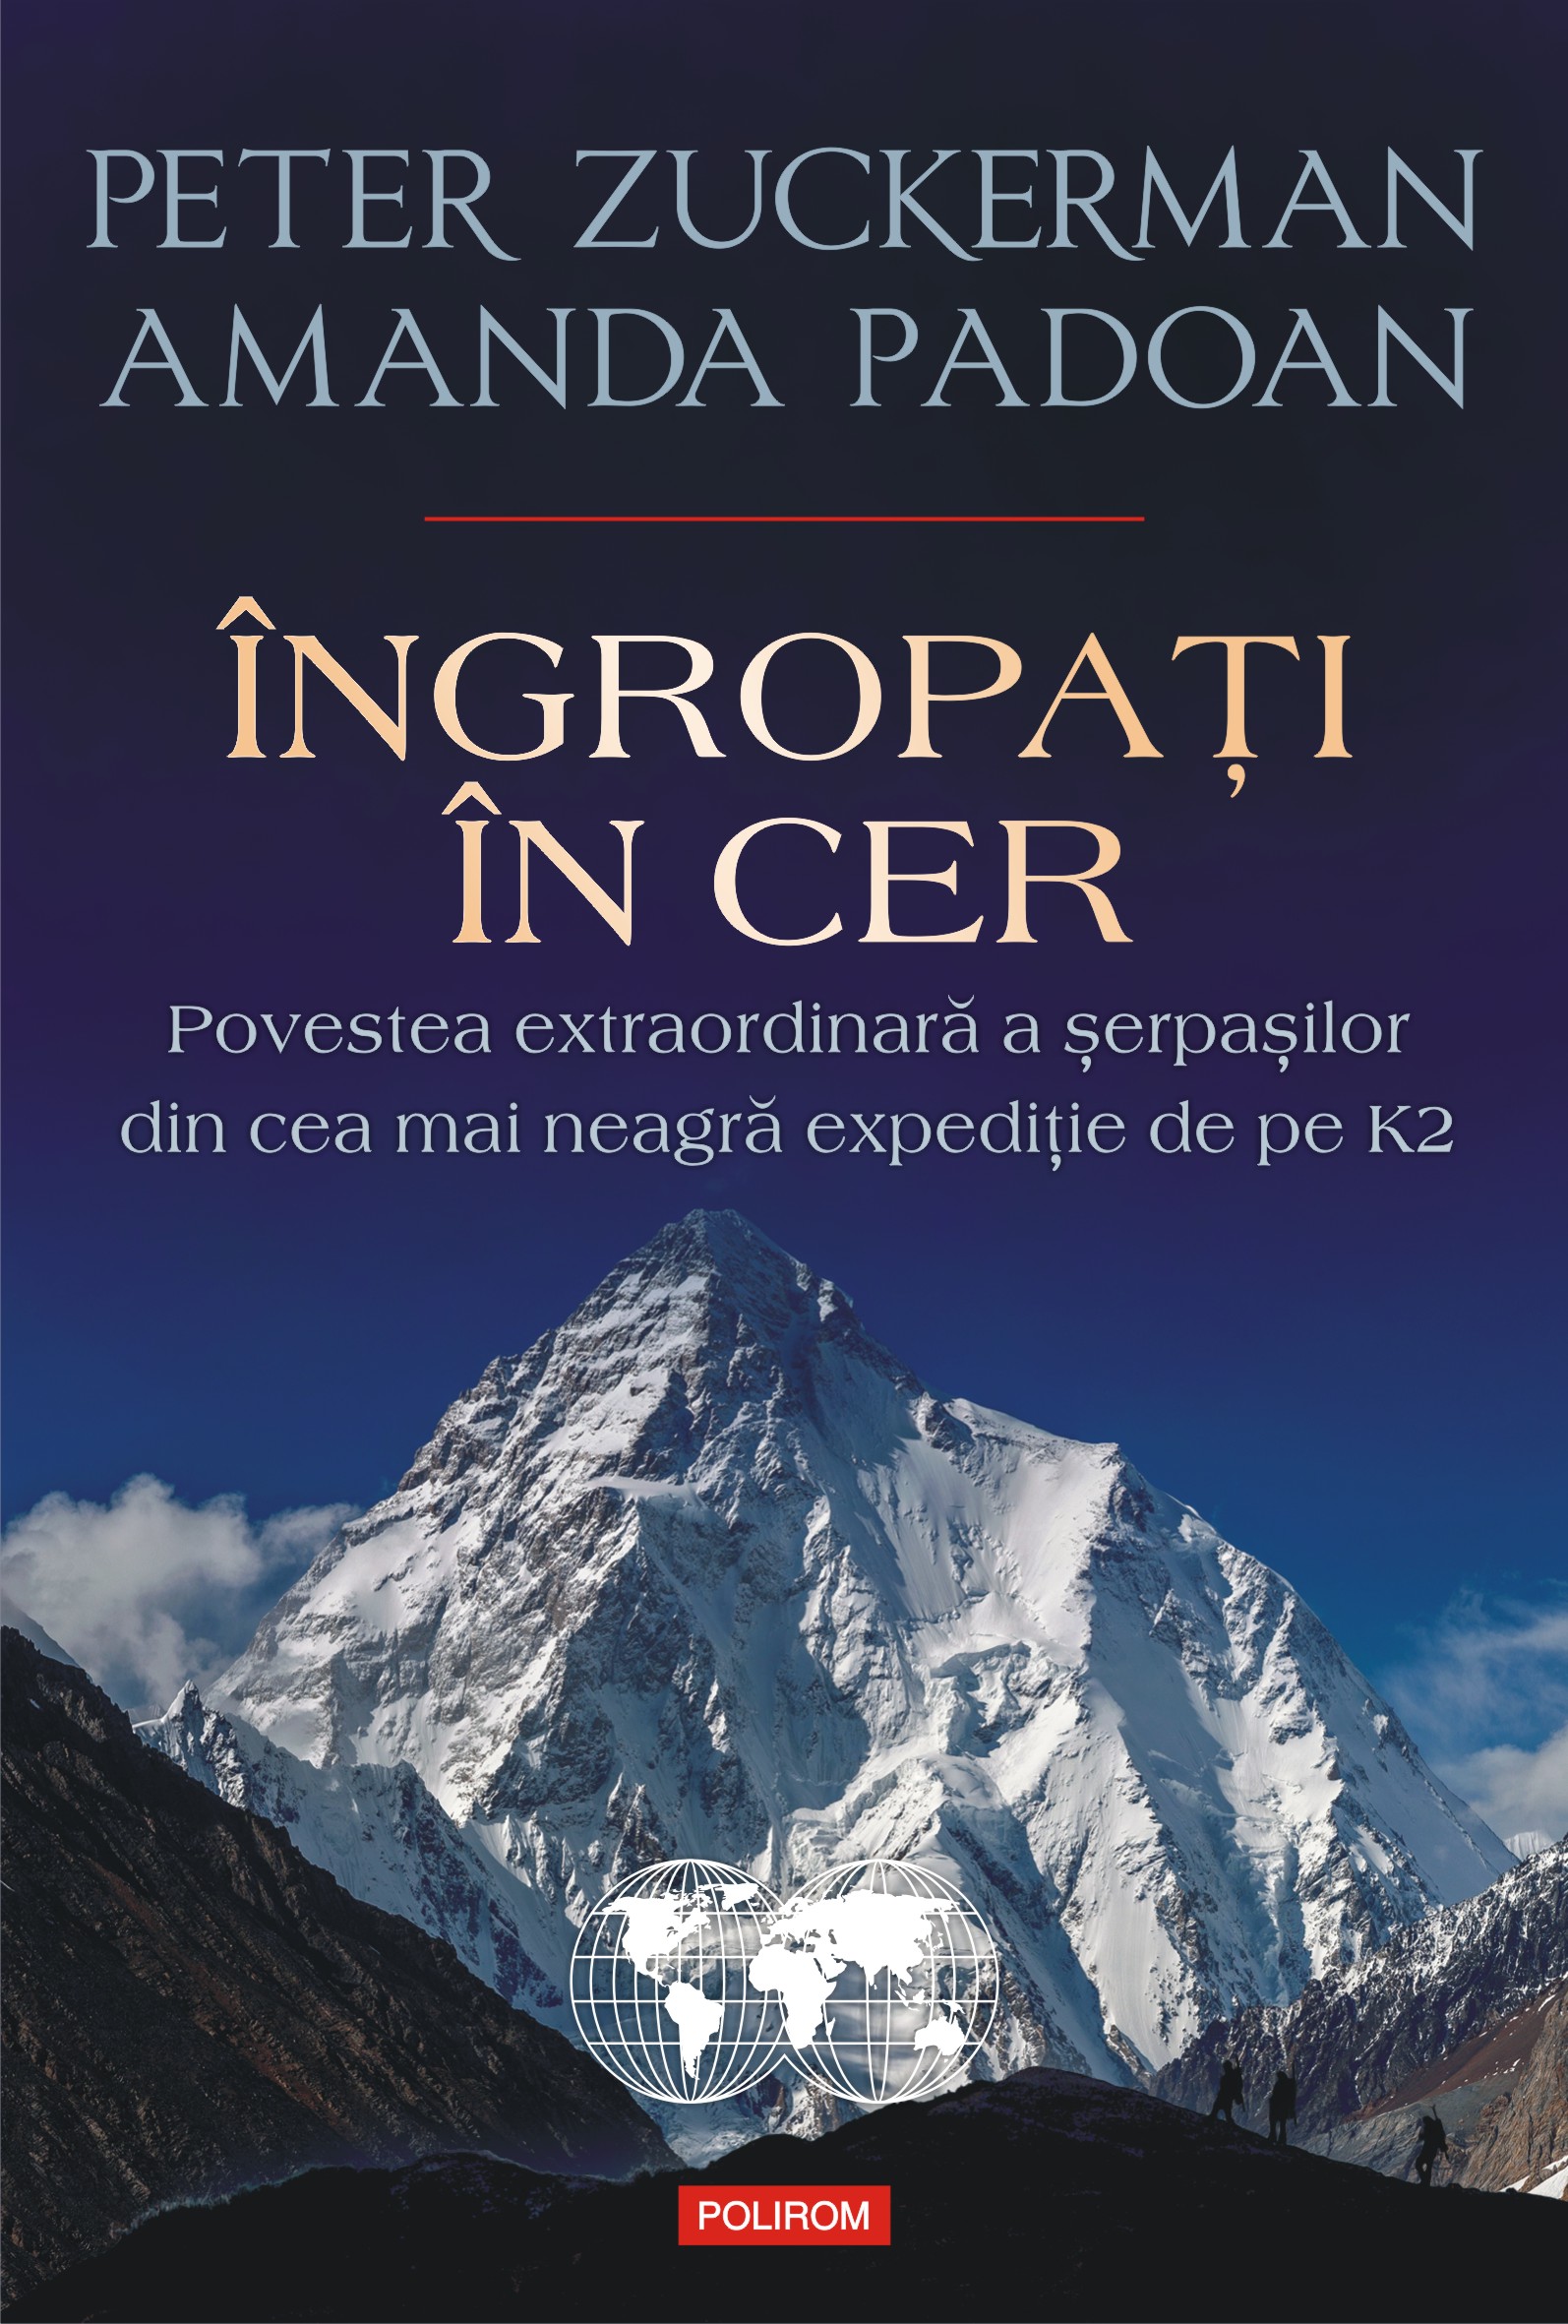 eBook Ingropati in cer. Povestea extraordinara a serpasilor din cea mai neagra expeditie de pe K2 - Amanda Padoan